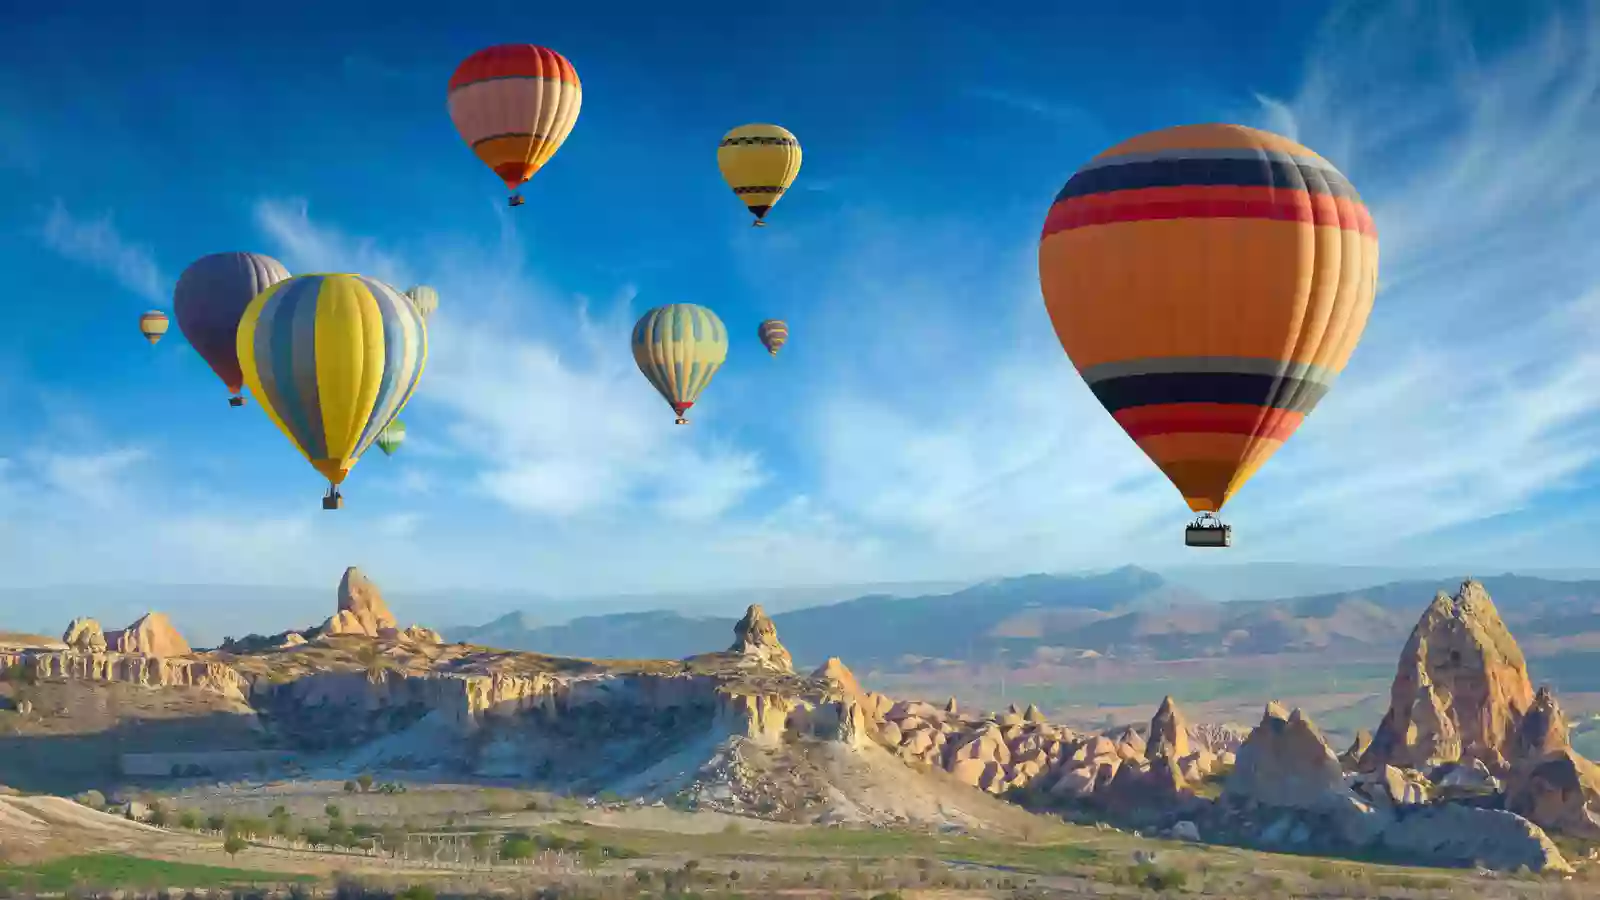 cappadocia-air-balloon-ask-aladdin